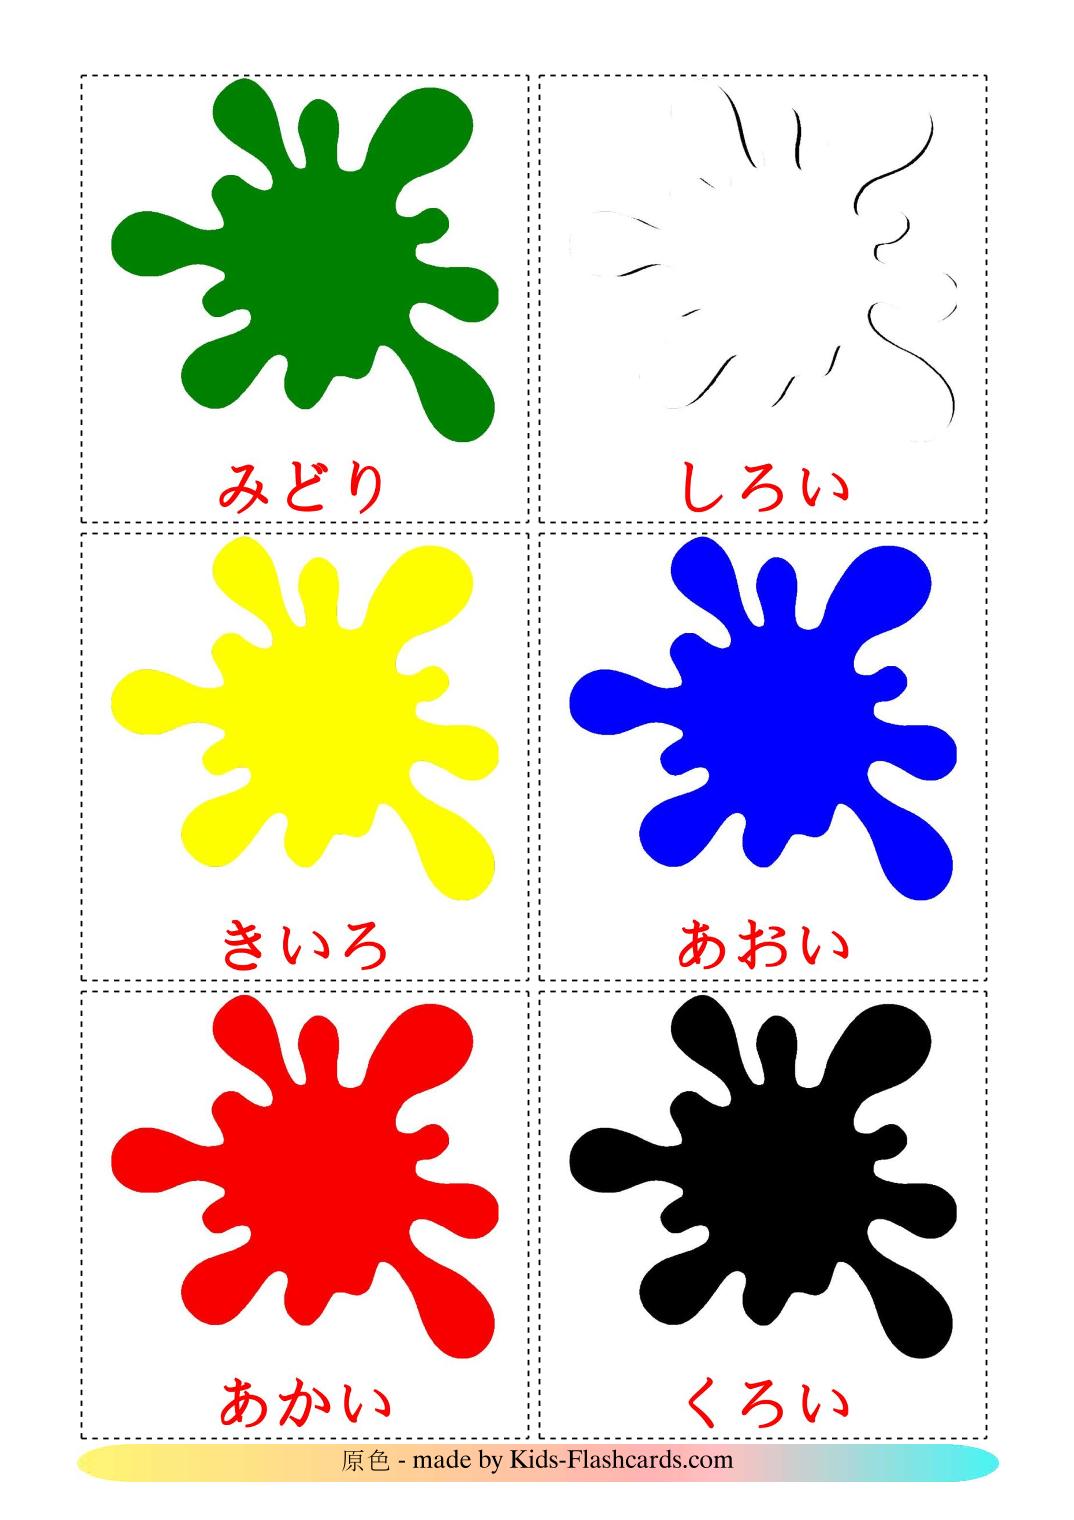 Couleurs de Base - 12 Flashcards japonais imprimables gratuitement